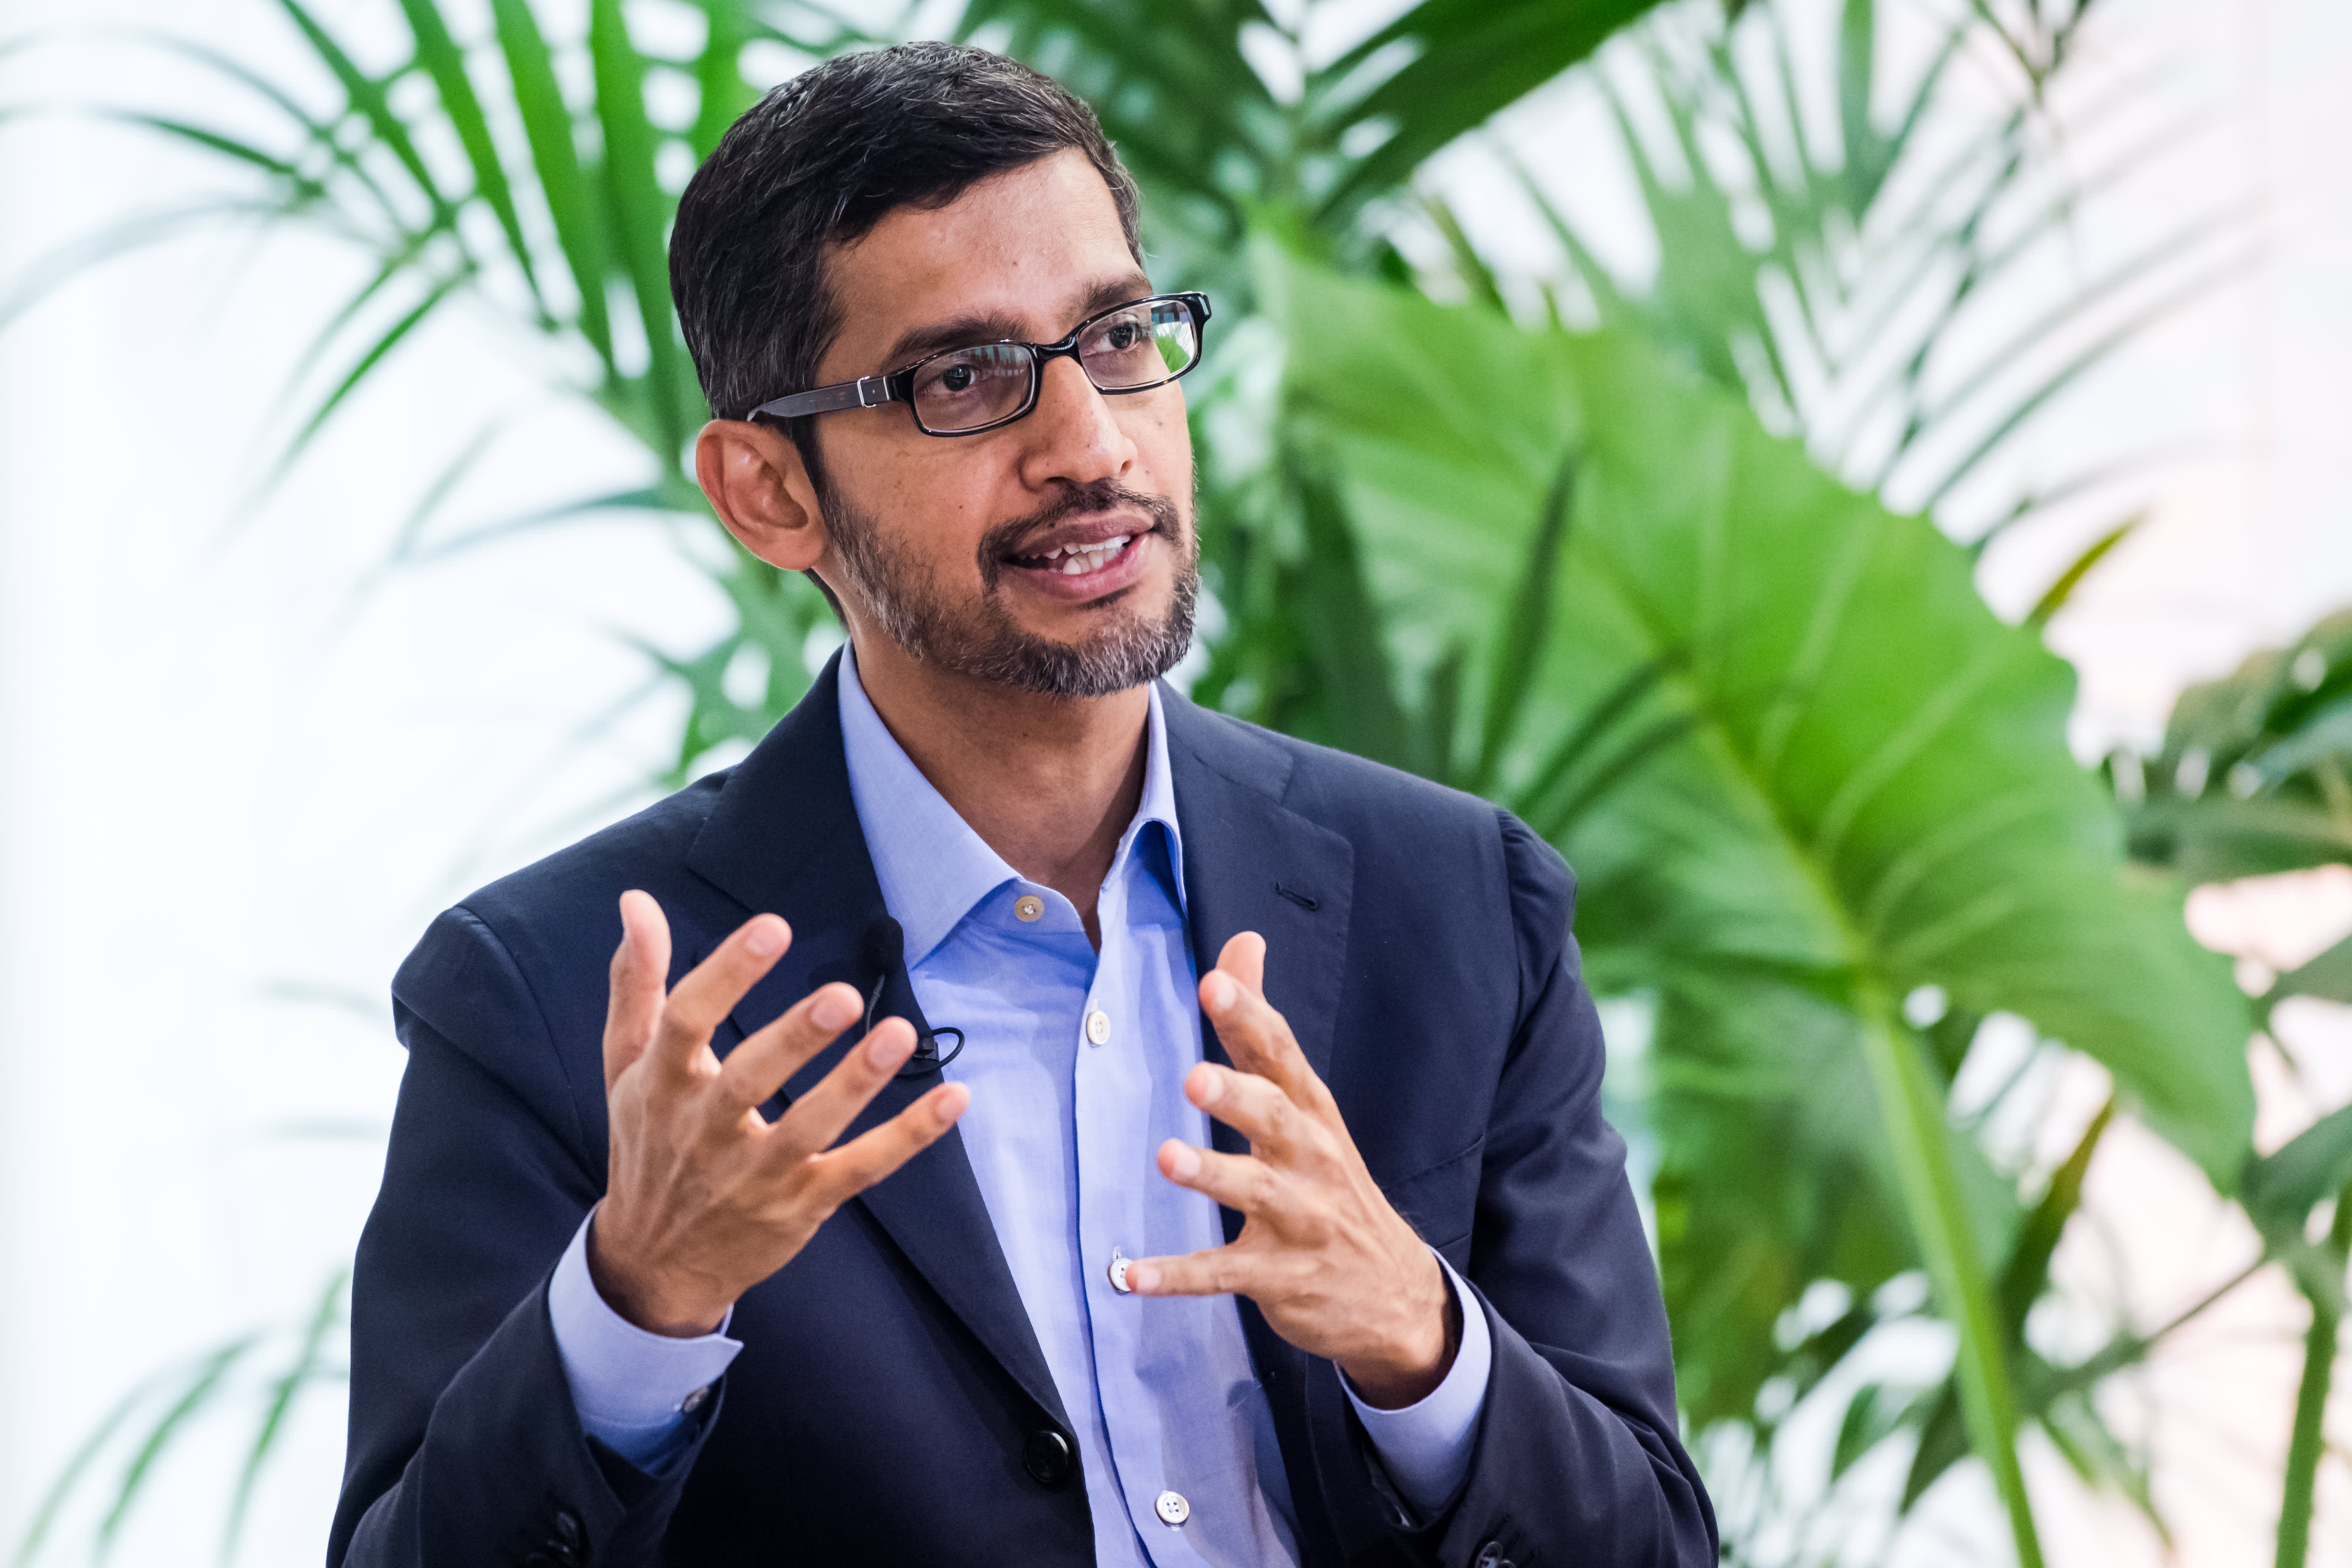 Meeting Google's climate change goals 'stresses out' CEO Sundar Pichai